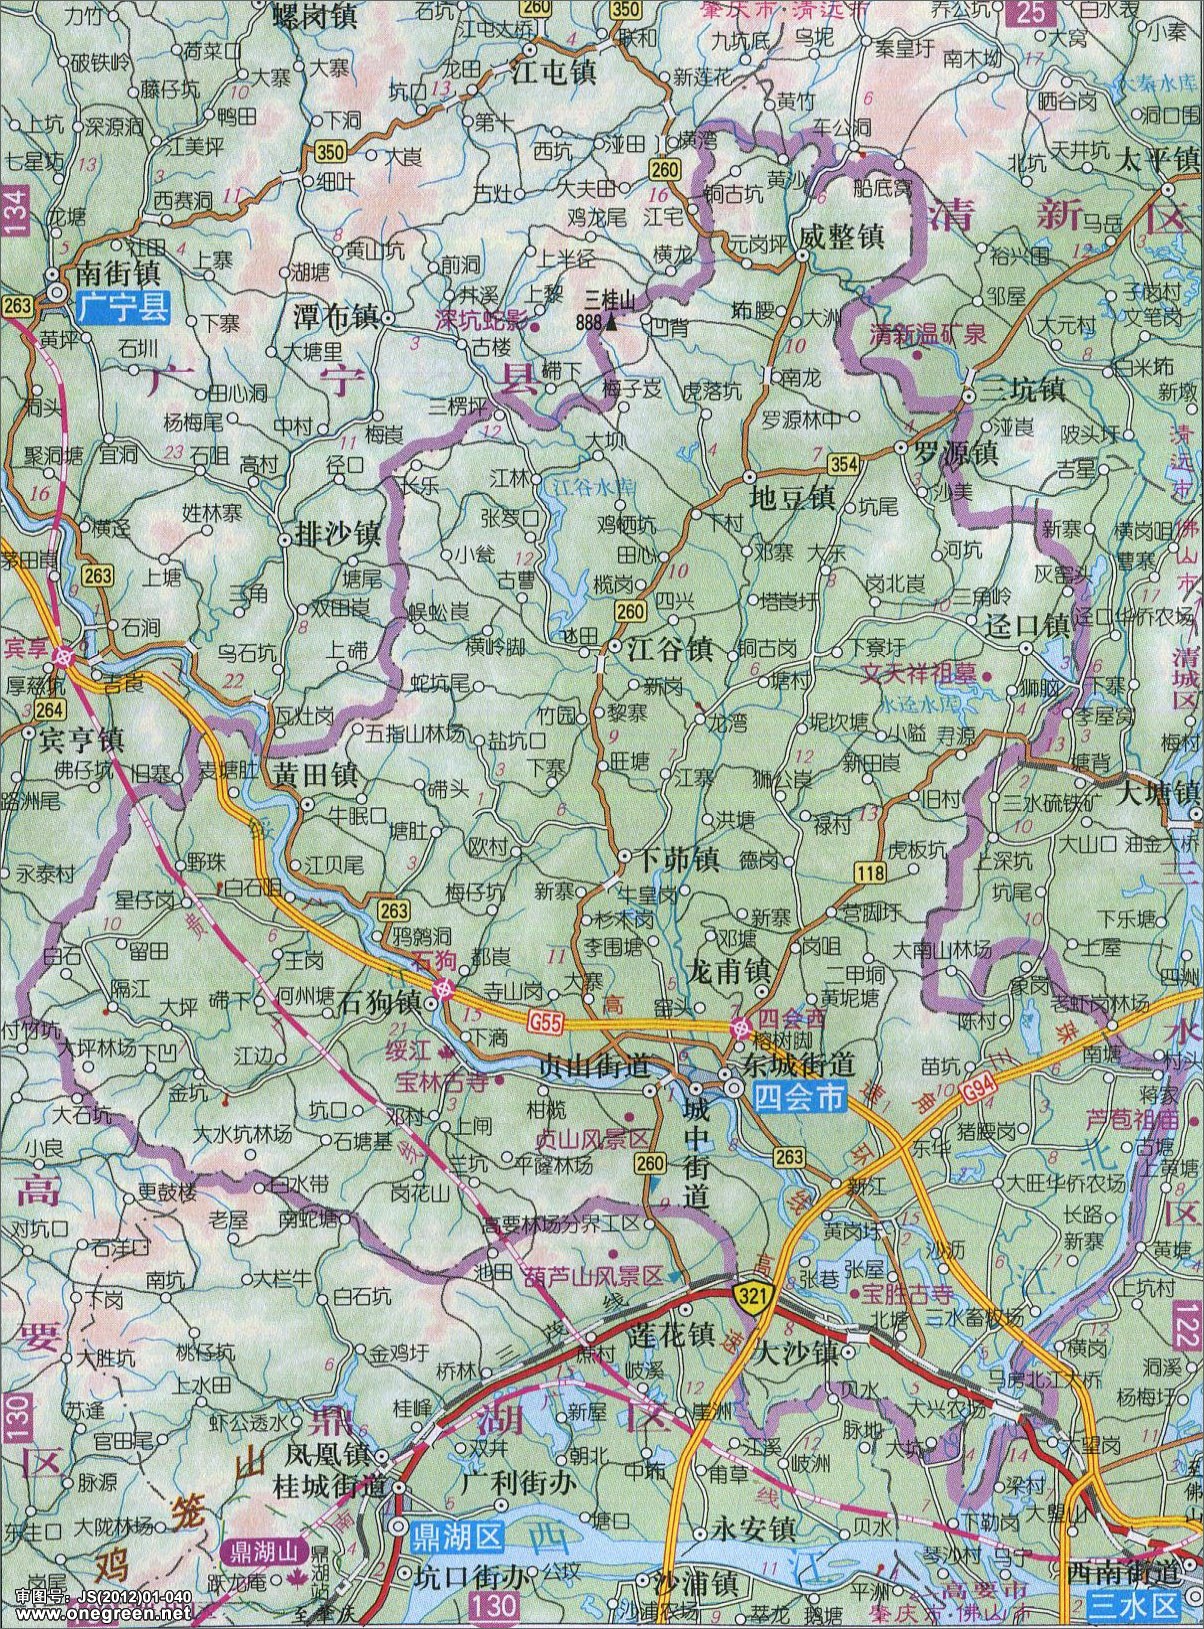 分类: 肇庆 上一张地图: 怀集县_广宁县地图  | 肇庆 |  下一张图片